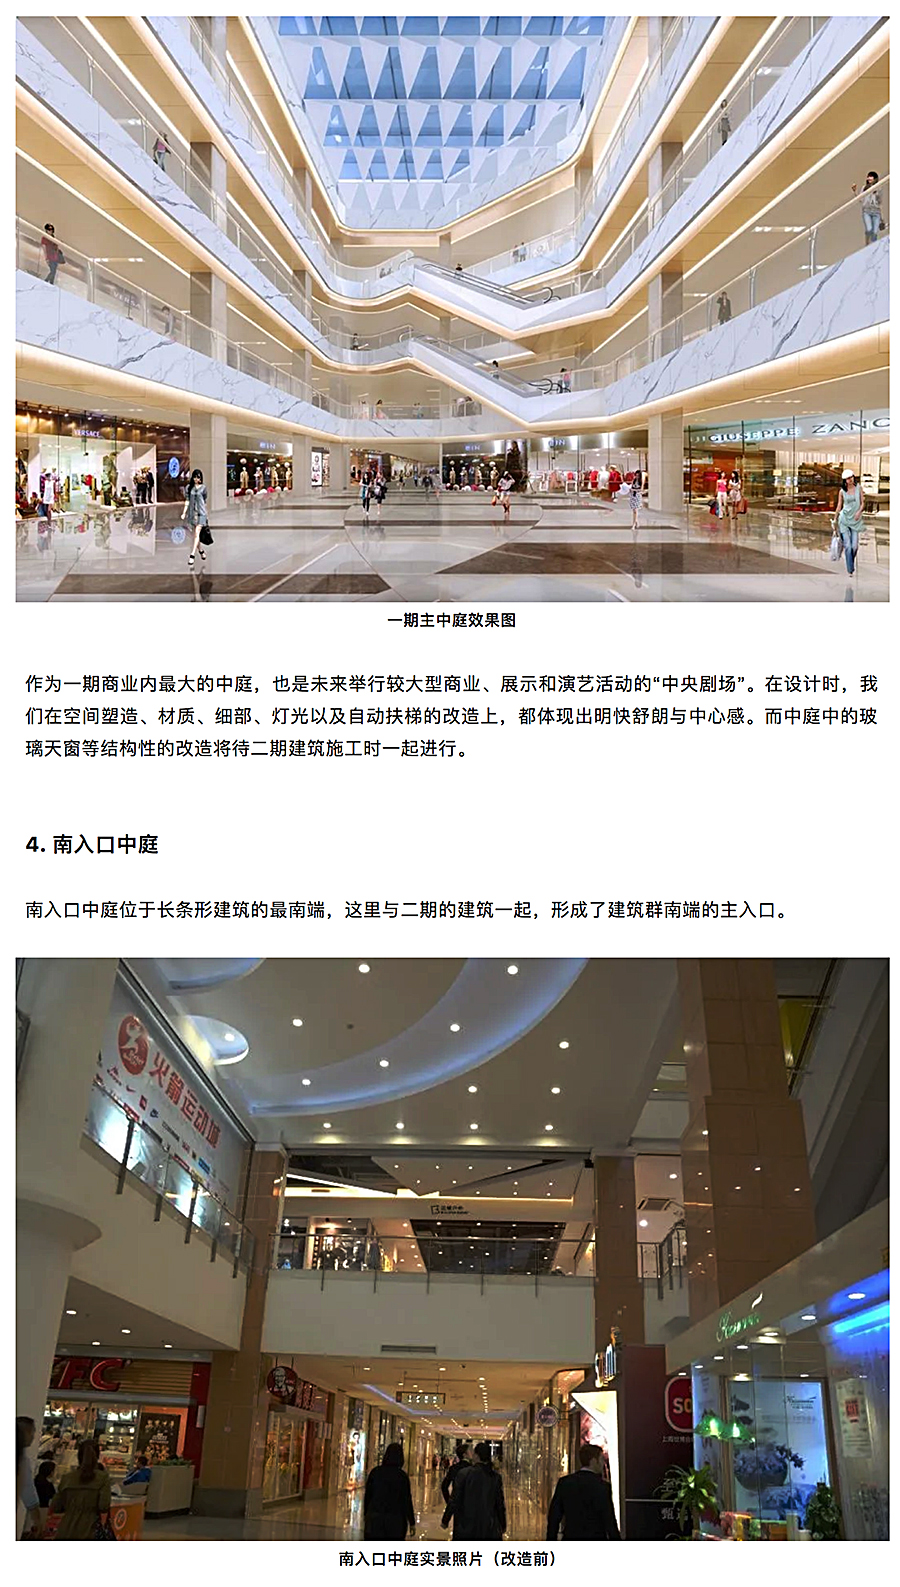 与时俱进的升级改造-_-南京龙江新城市广场一期商业改造_0011_图层-12.jpg